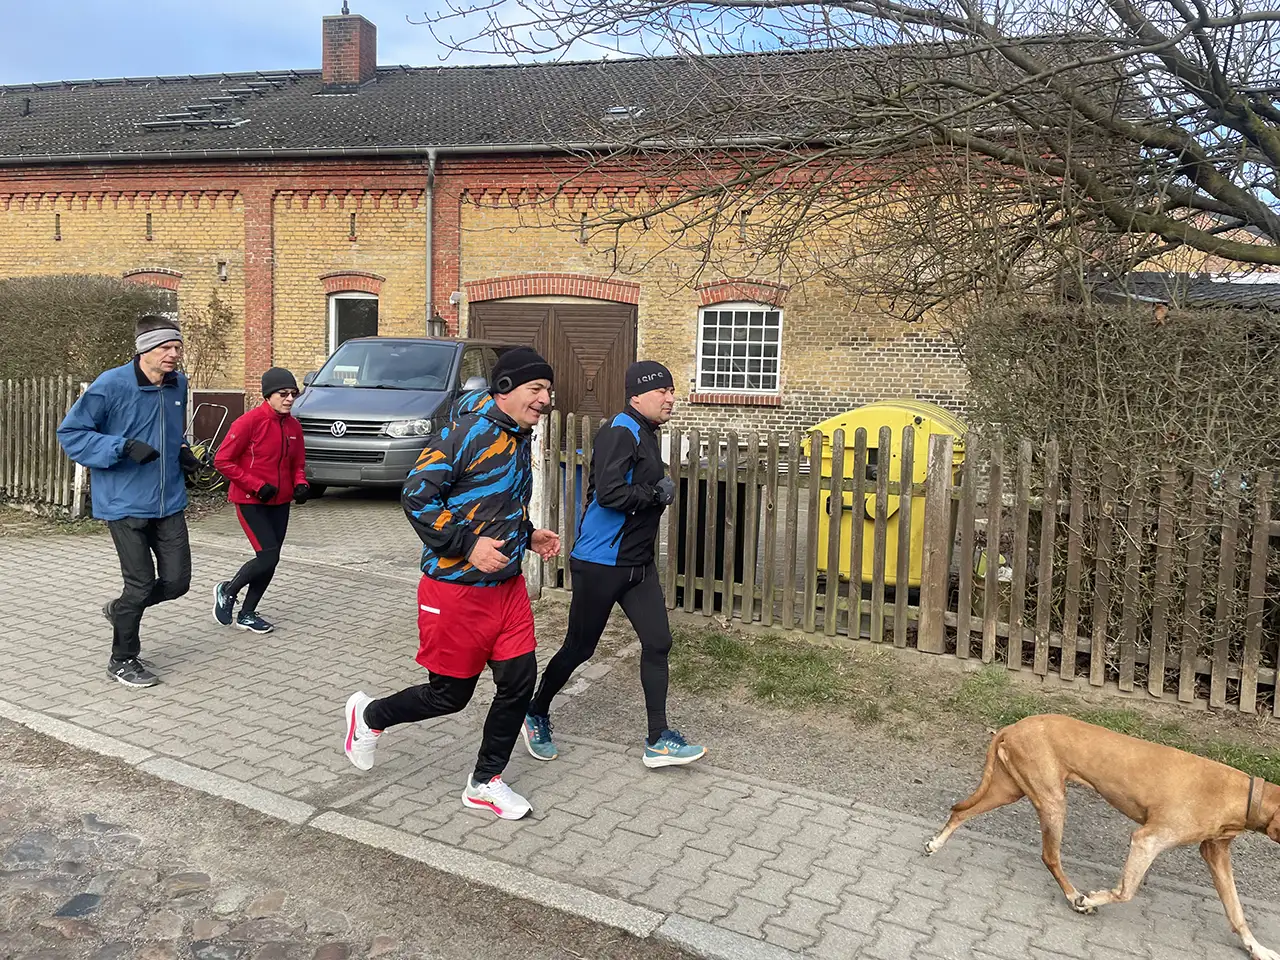 Laufgruppe mit Hund vor einem bäuerlichen Backsteingebäude mit gelben und roten Ziegeln